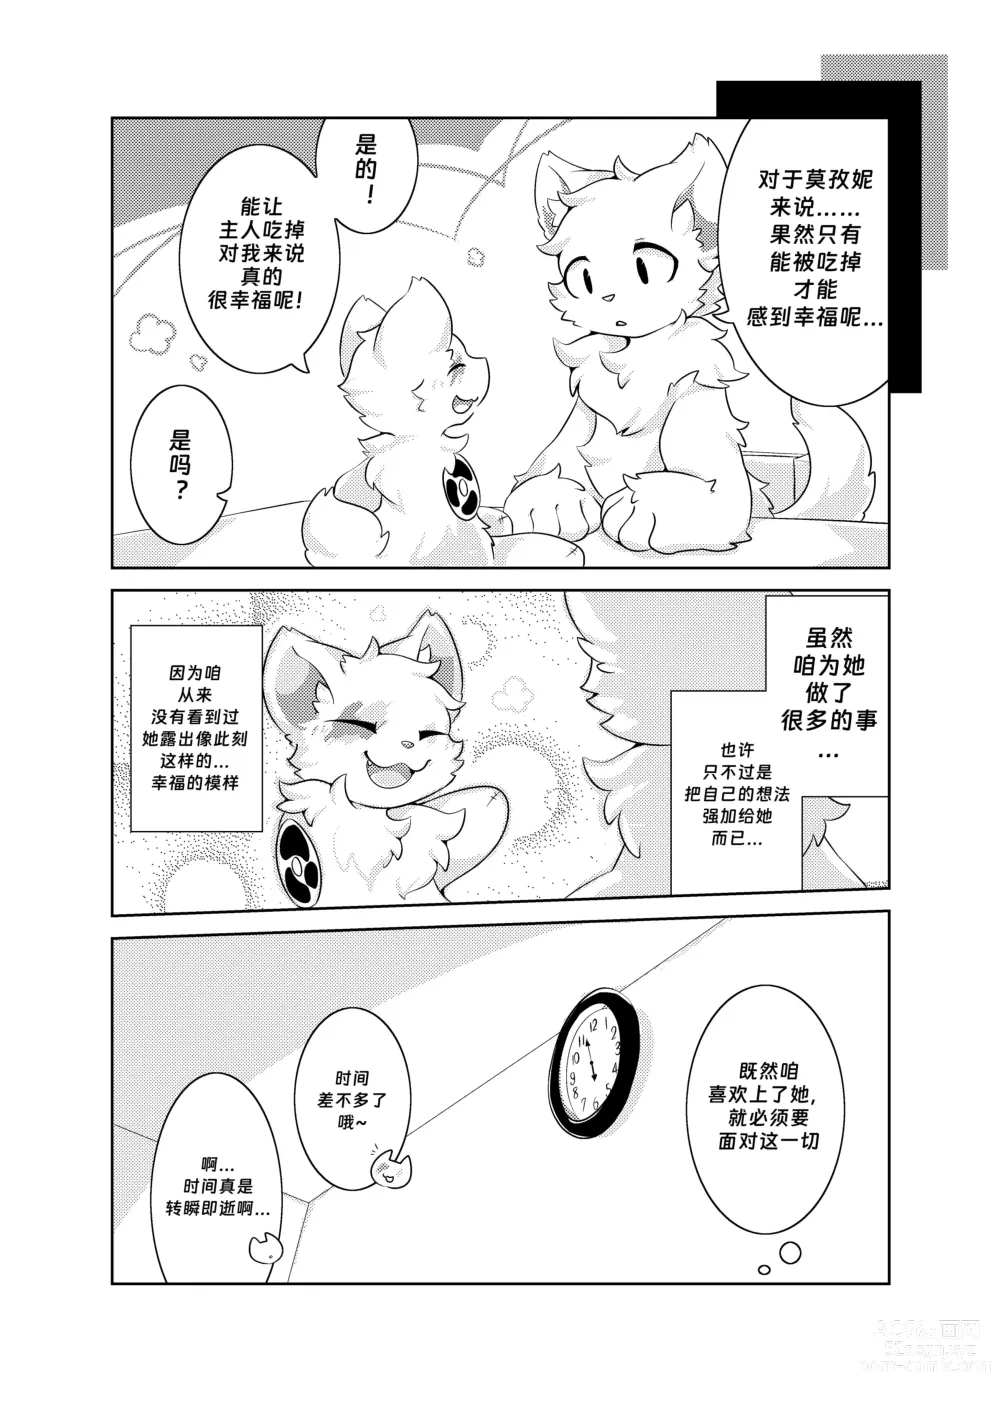 Page 31 of doujinshi Bokuyo motsuni no oishii seikatu.R-18G